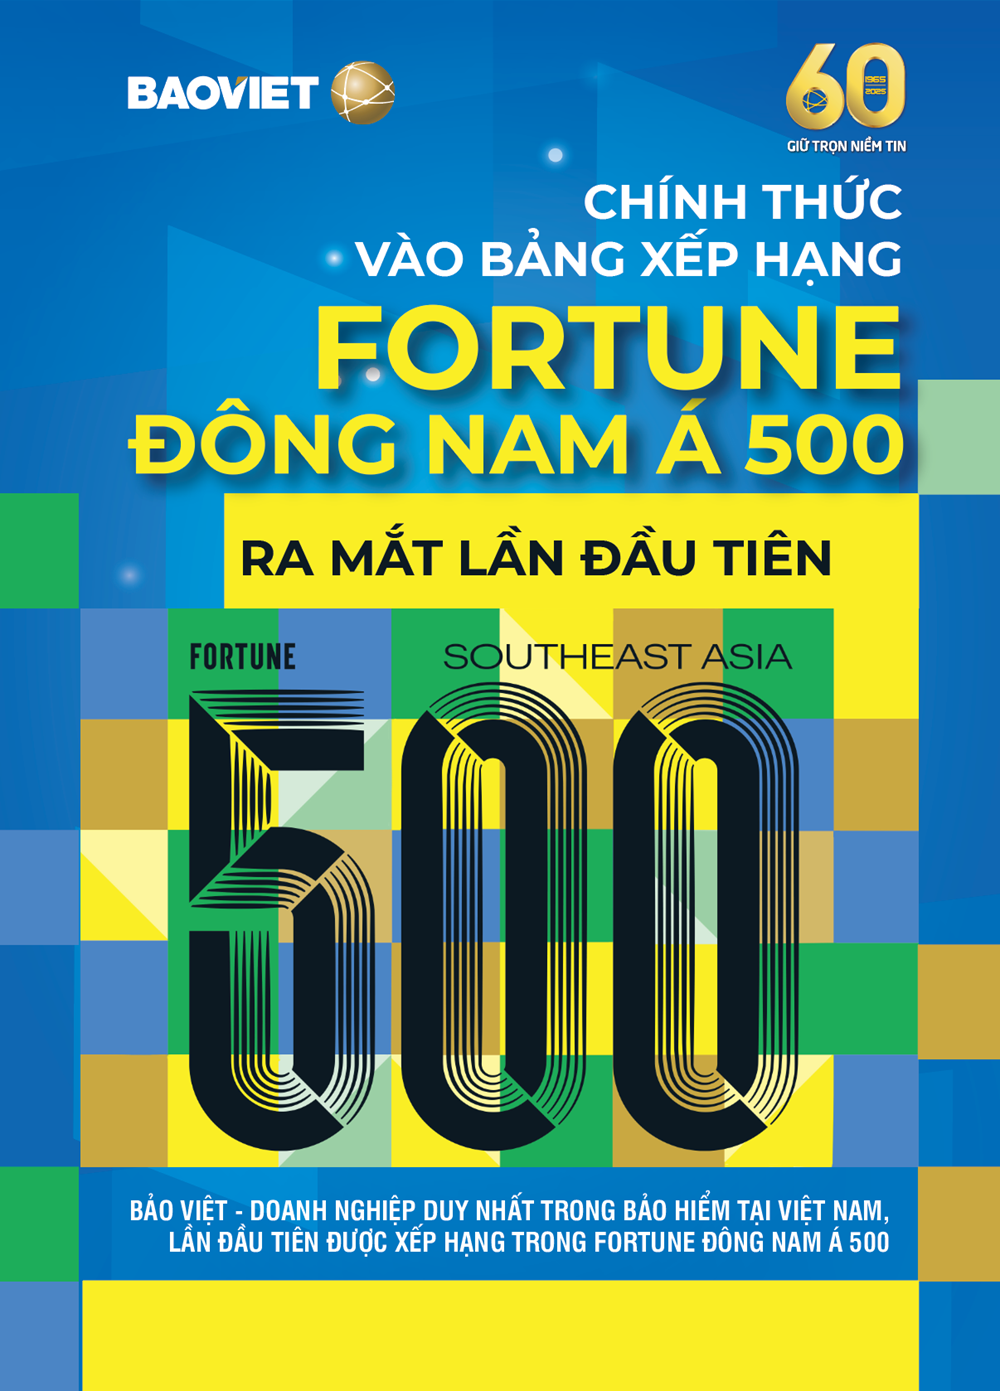 Bảo Việt lần đầu tiên được xếp hạng trong Fortune Đông Nam Á 500 - ảnh 1